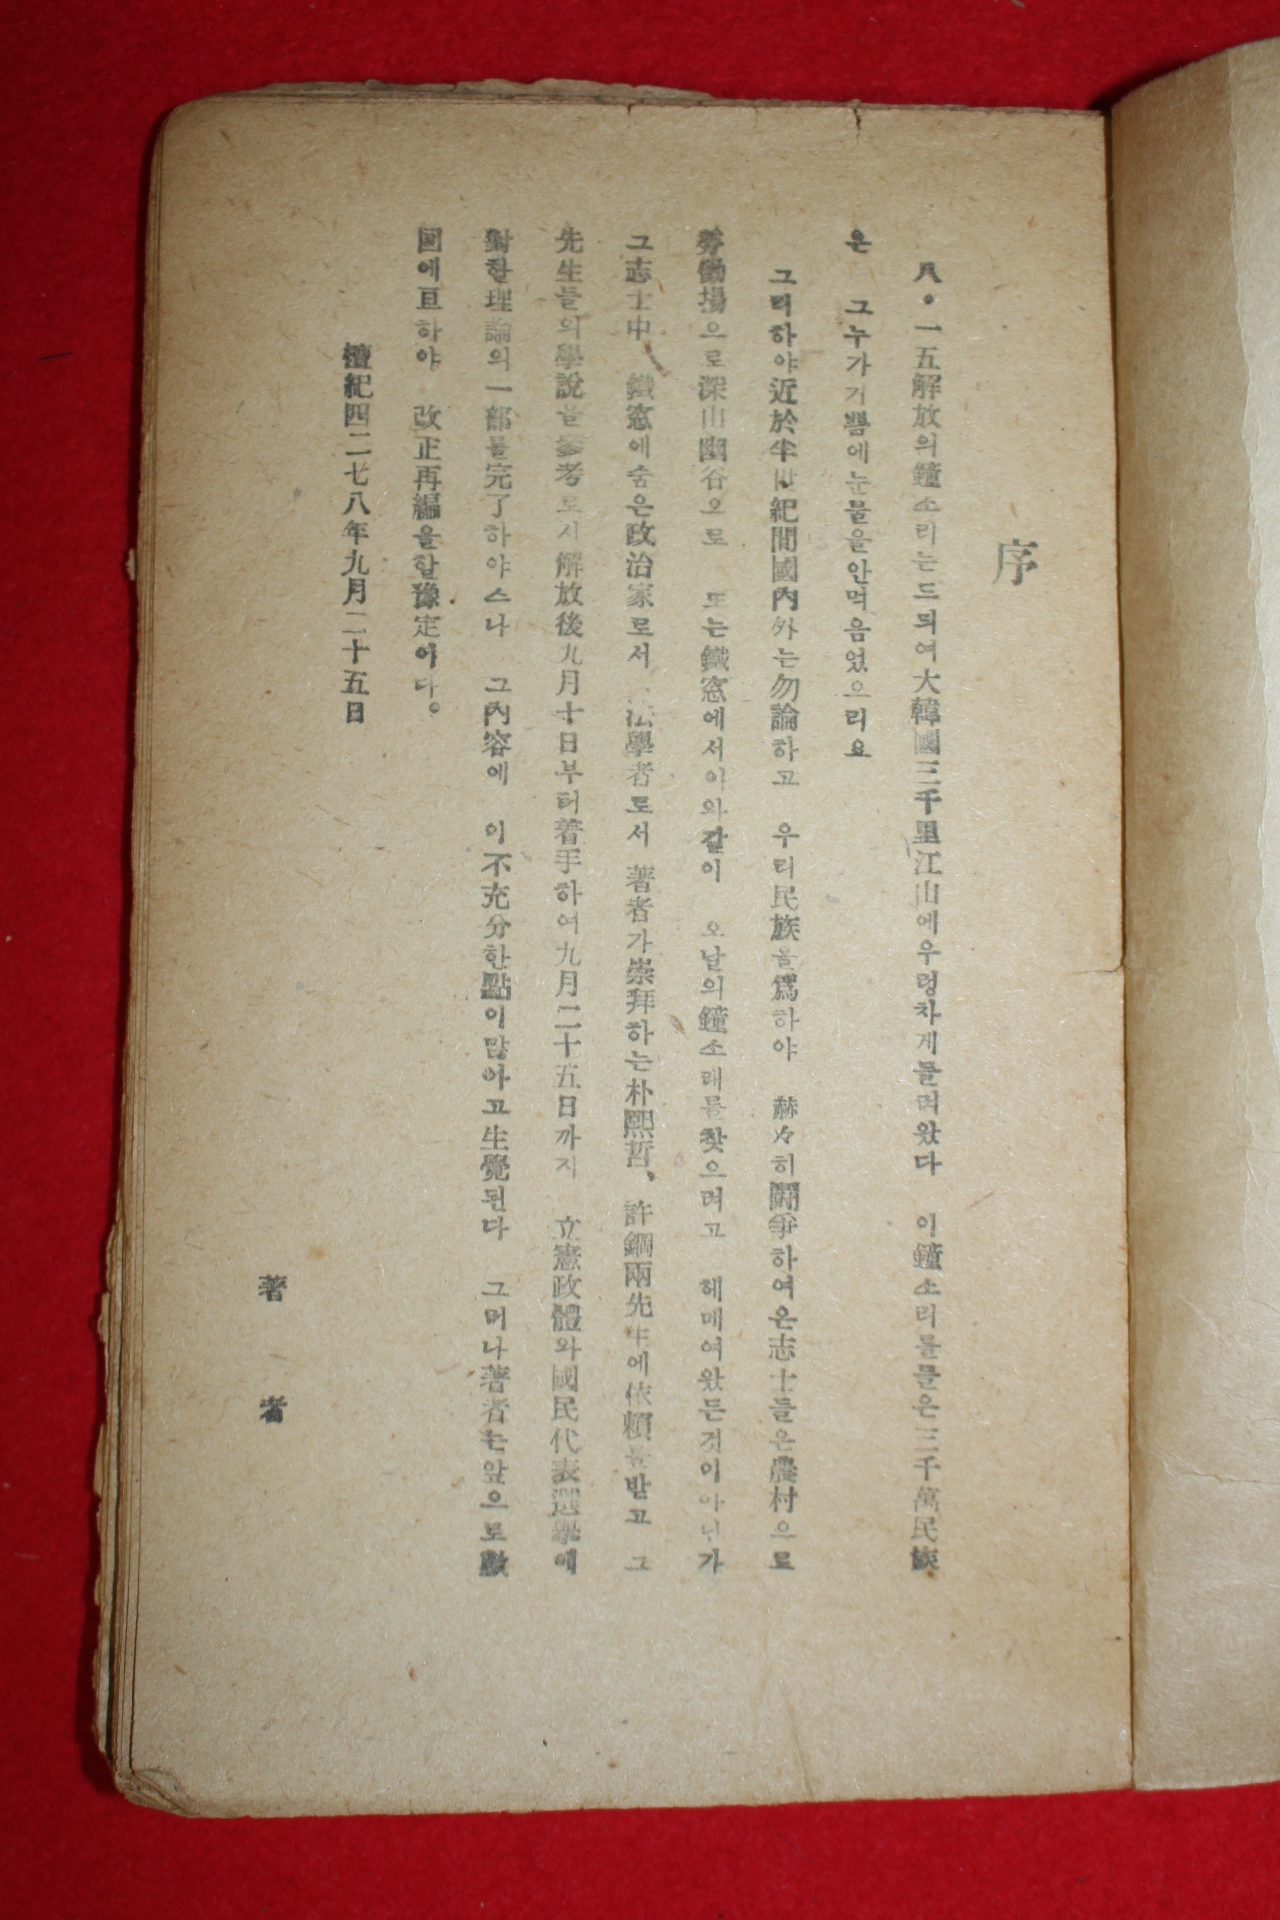 1945년 정치문제연구원 우리나라 입헌정체(立憲政體)는